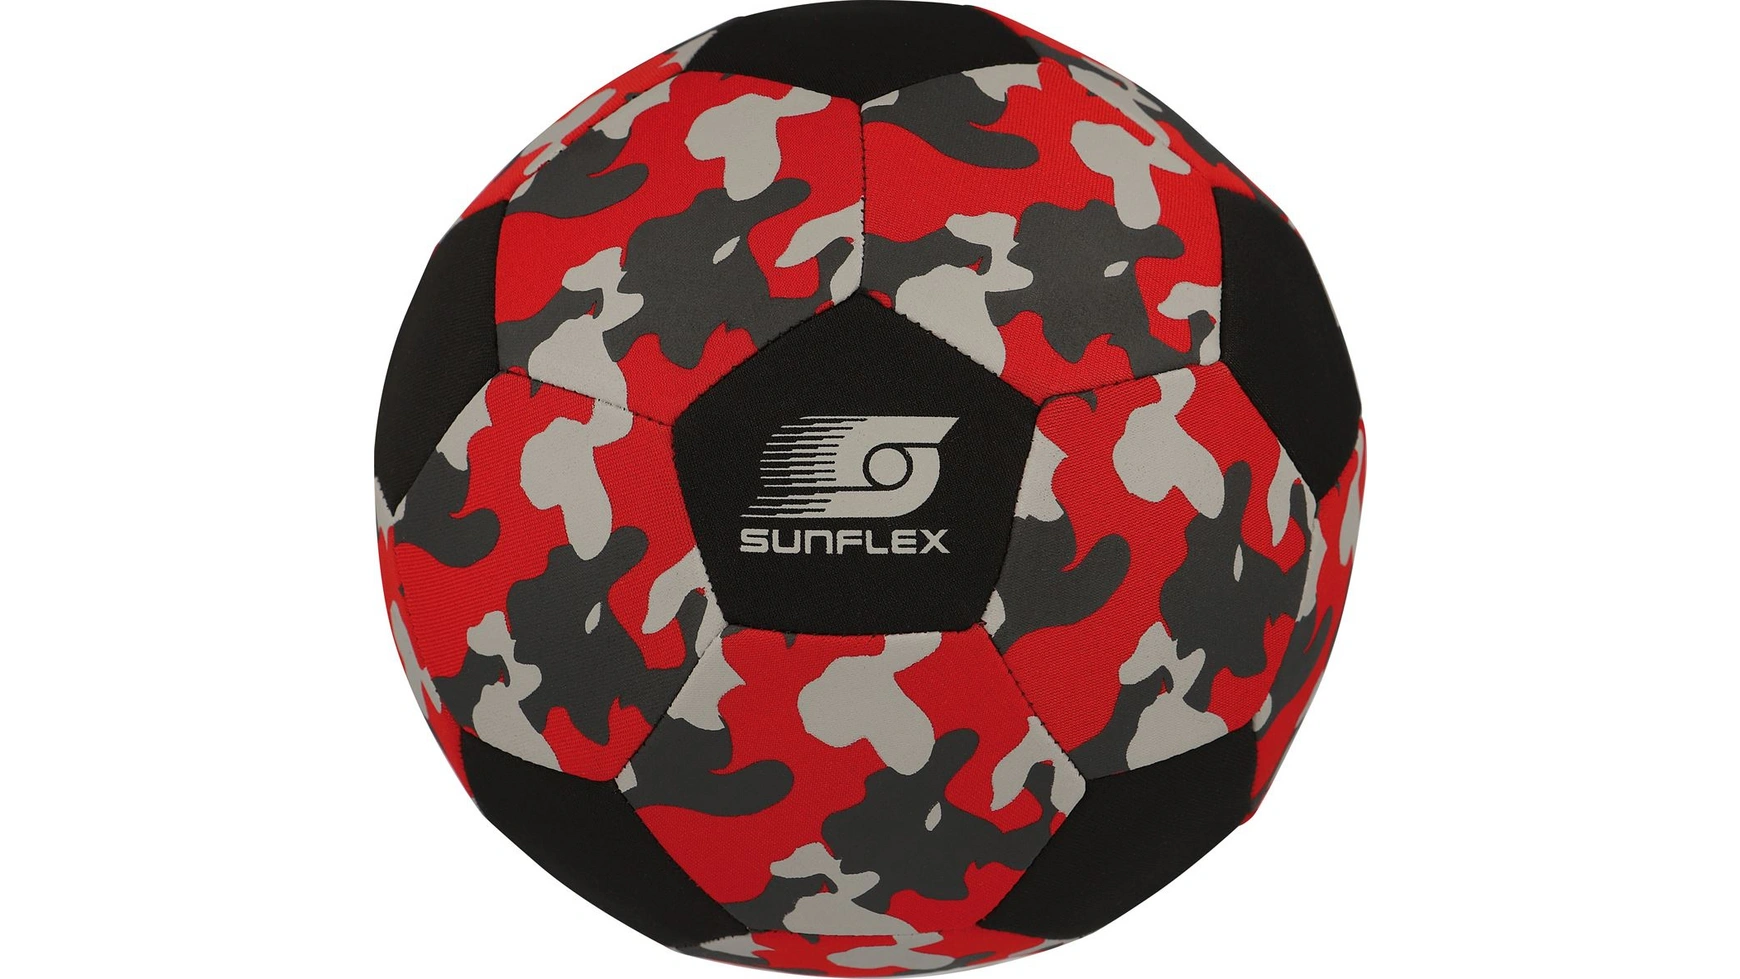 Неопреновый футбольный размер 5 камуфляжный красный Sunflex размер 5 профессиональный мяч для матча по футболу высококачественный мяч из полиуретана стандартные мячи для тренировок на открытом воз